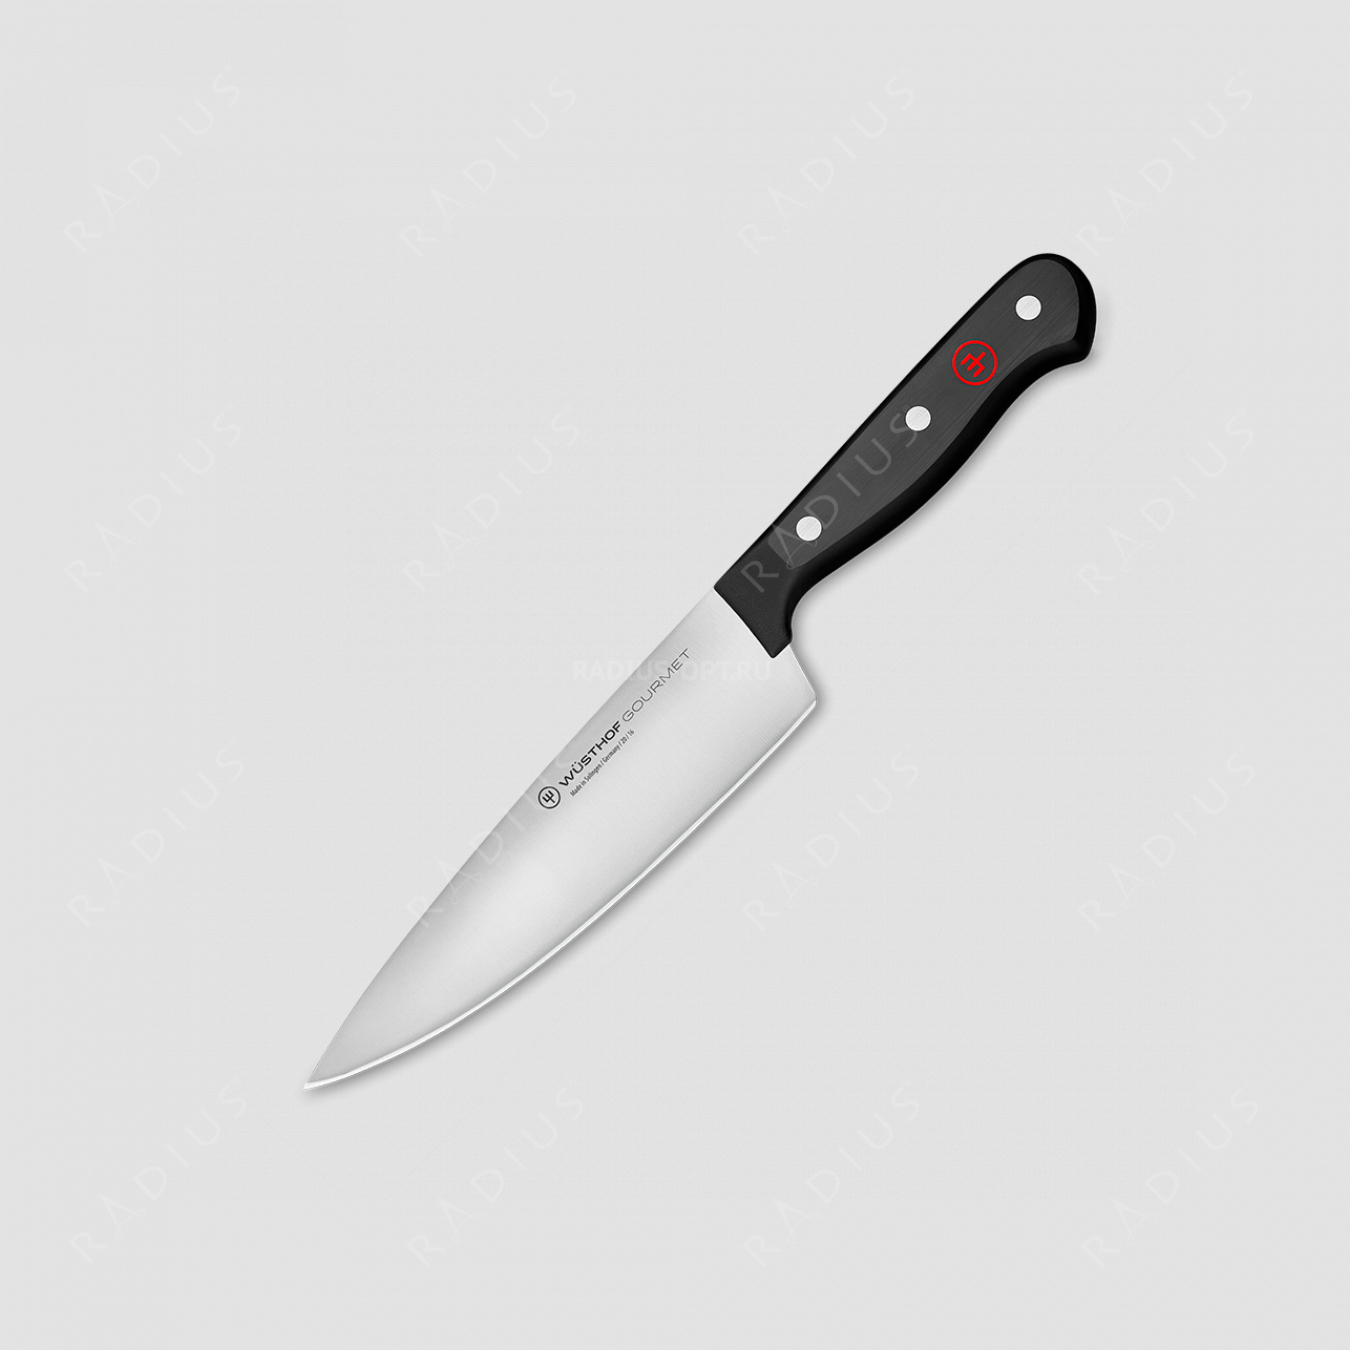 Профессиональный поварской кухонный нож 16 см, серия Gourmet, WUESTHOF, Золинген, Германия